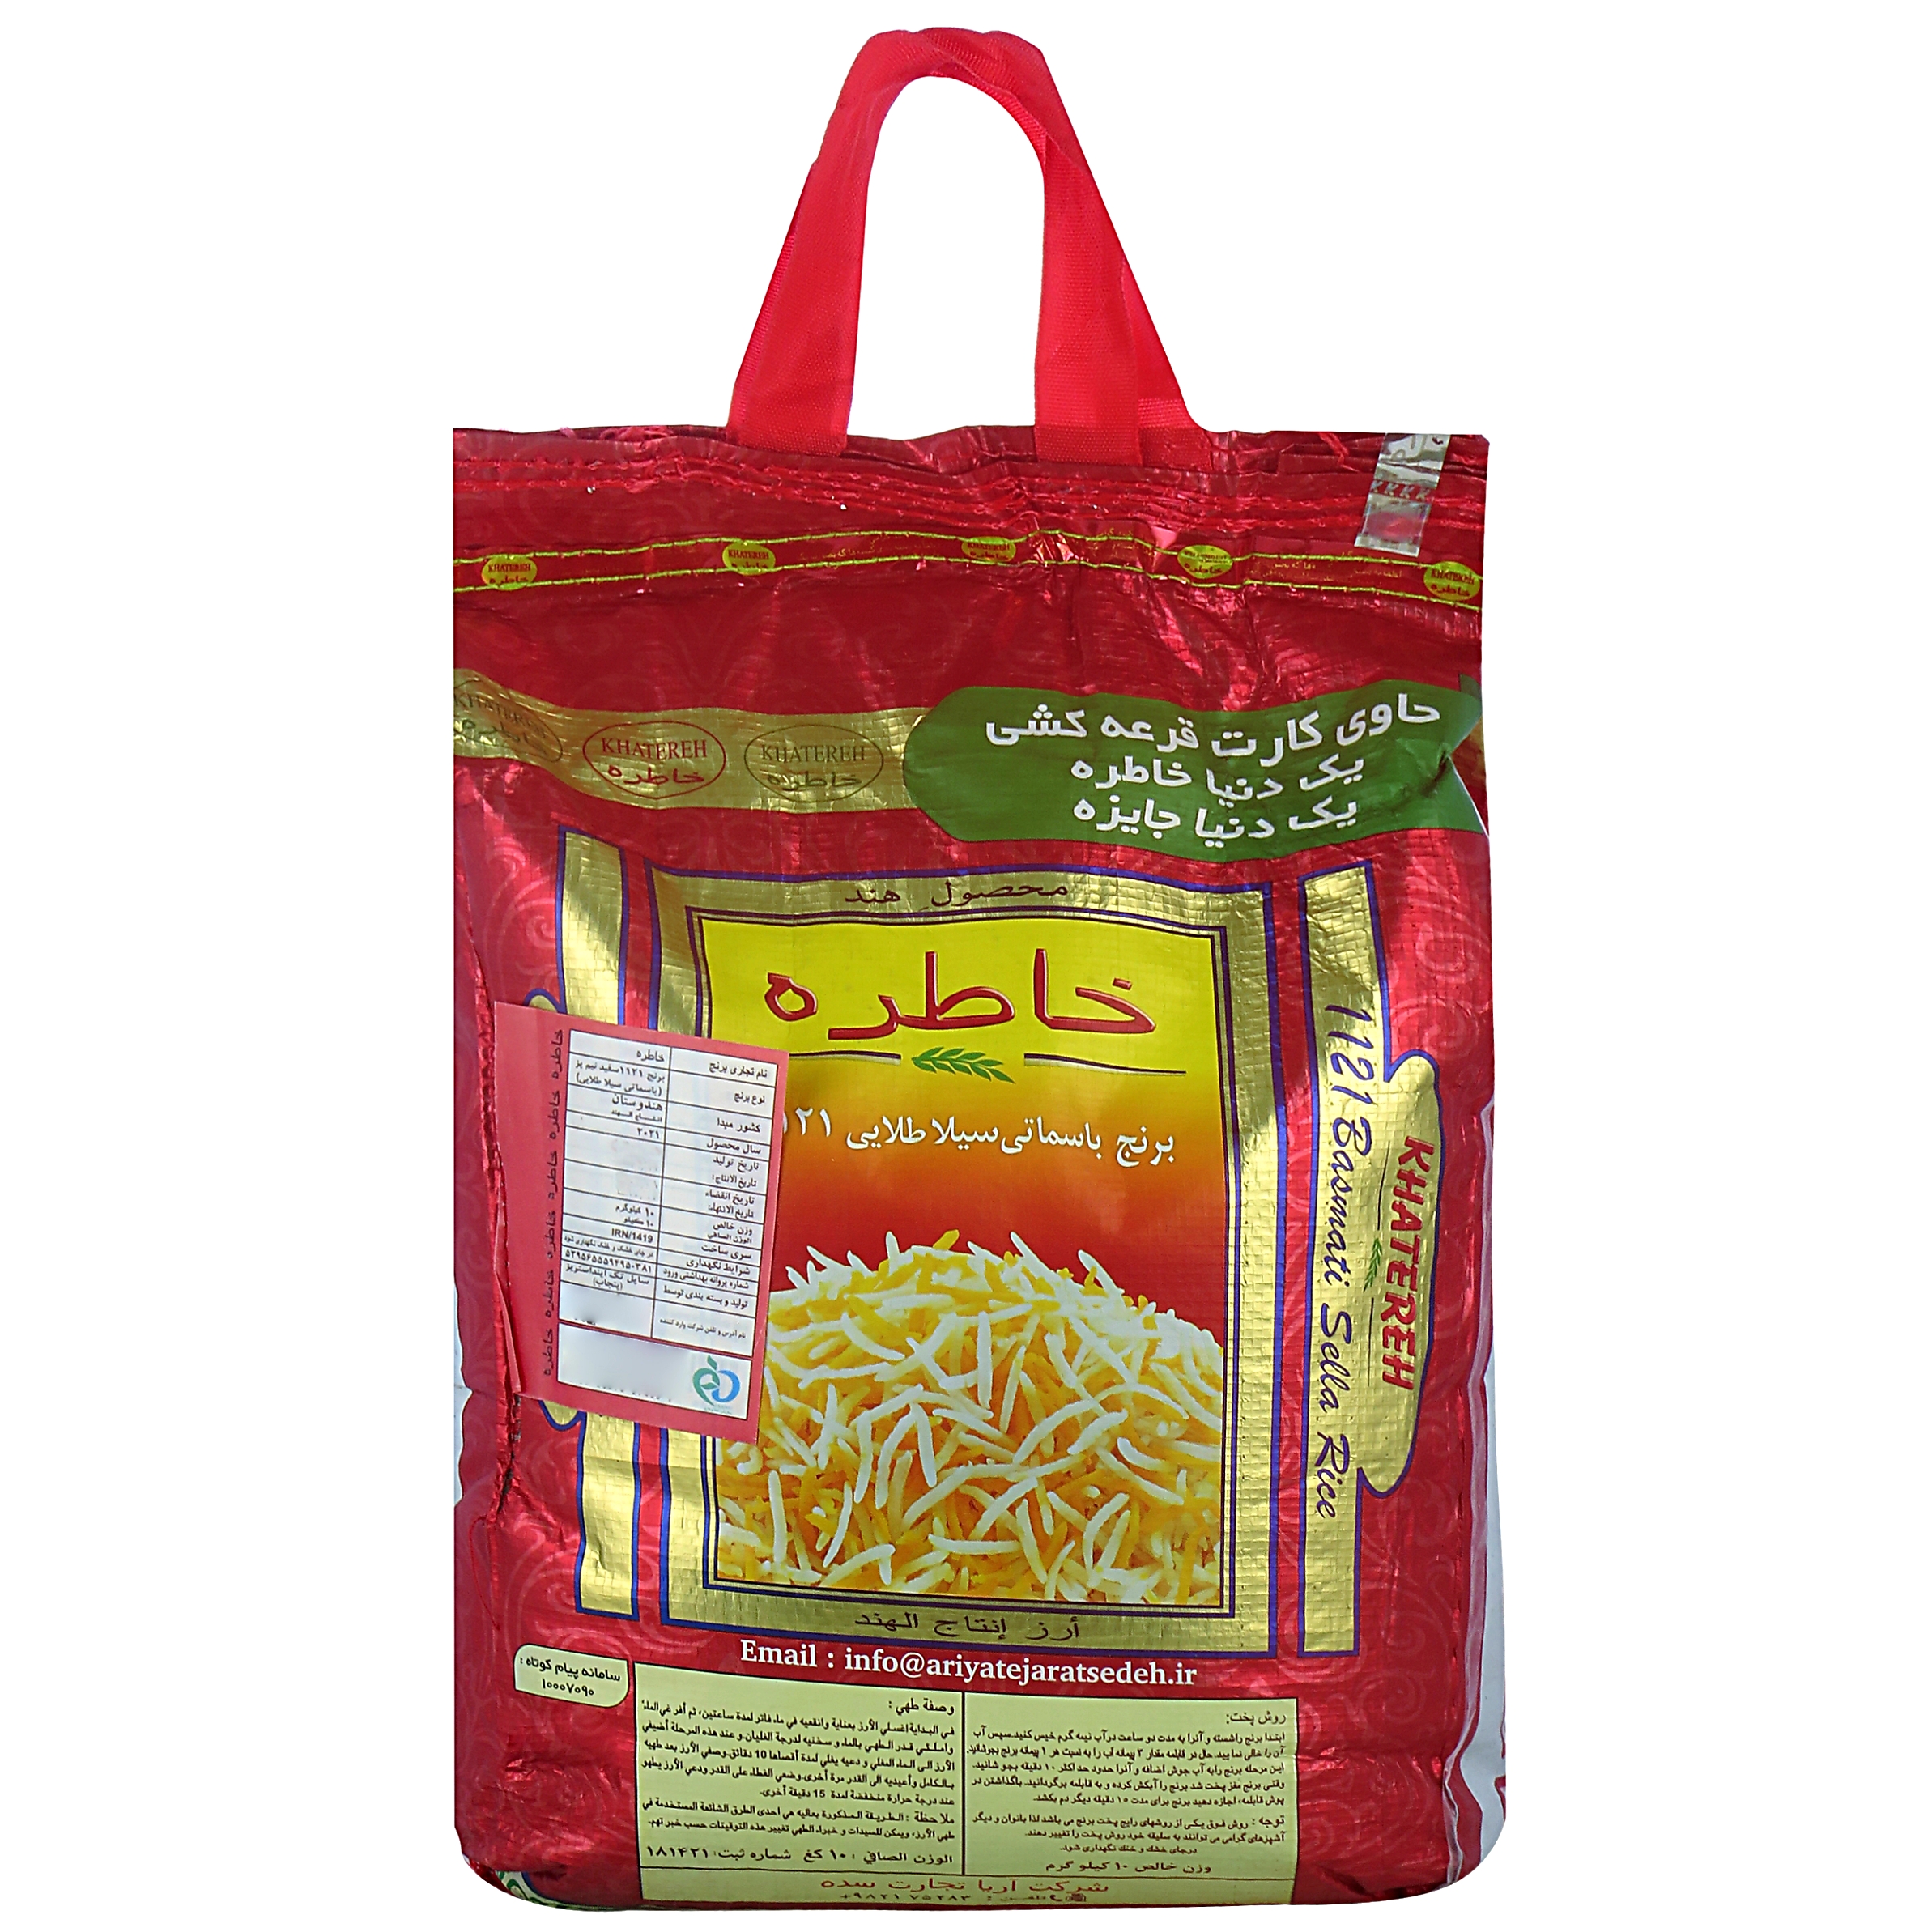 نکته خرید - قیمت روز برنج هندی 1121 خاطره - 10 کیلو گرم خرید